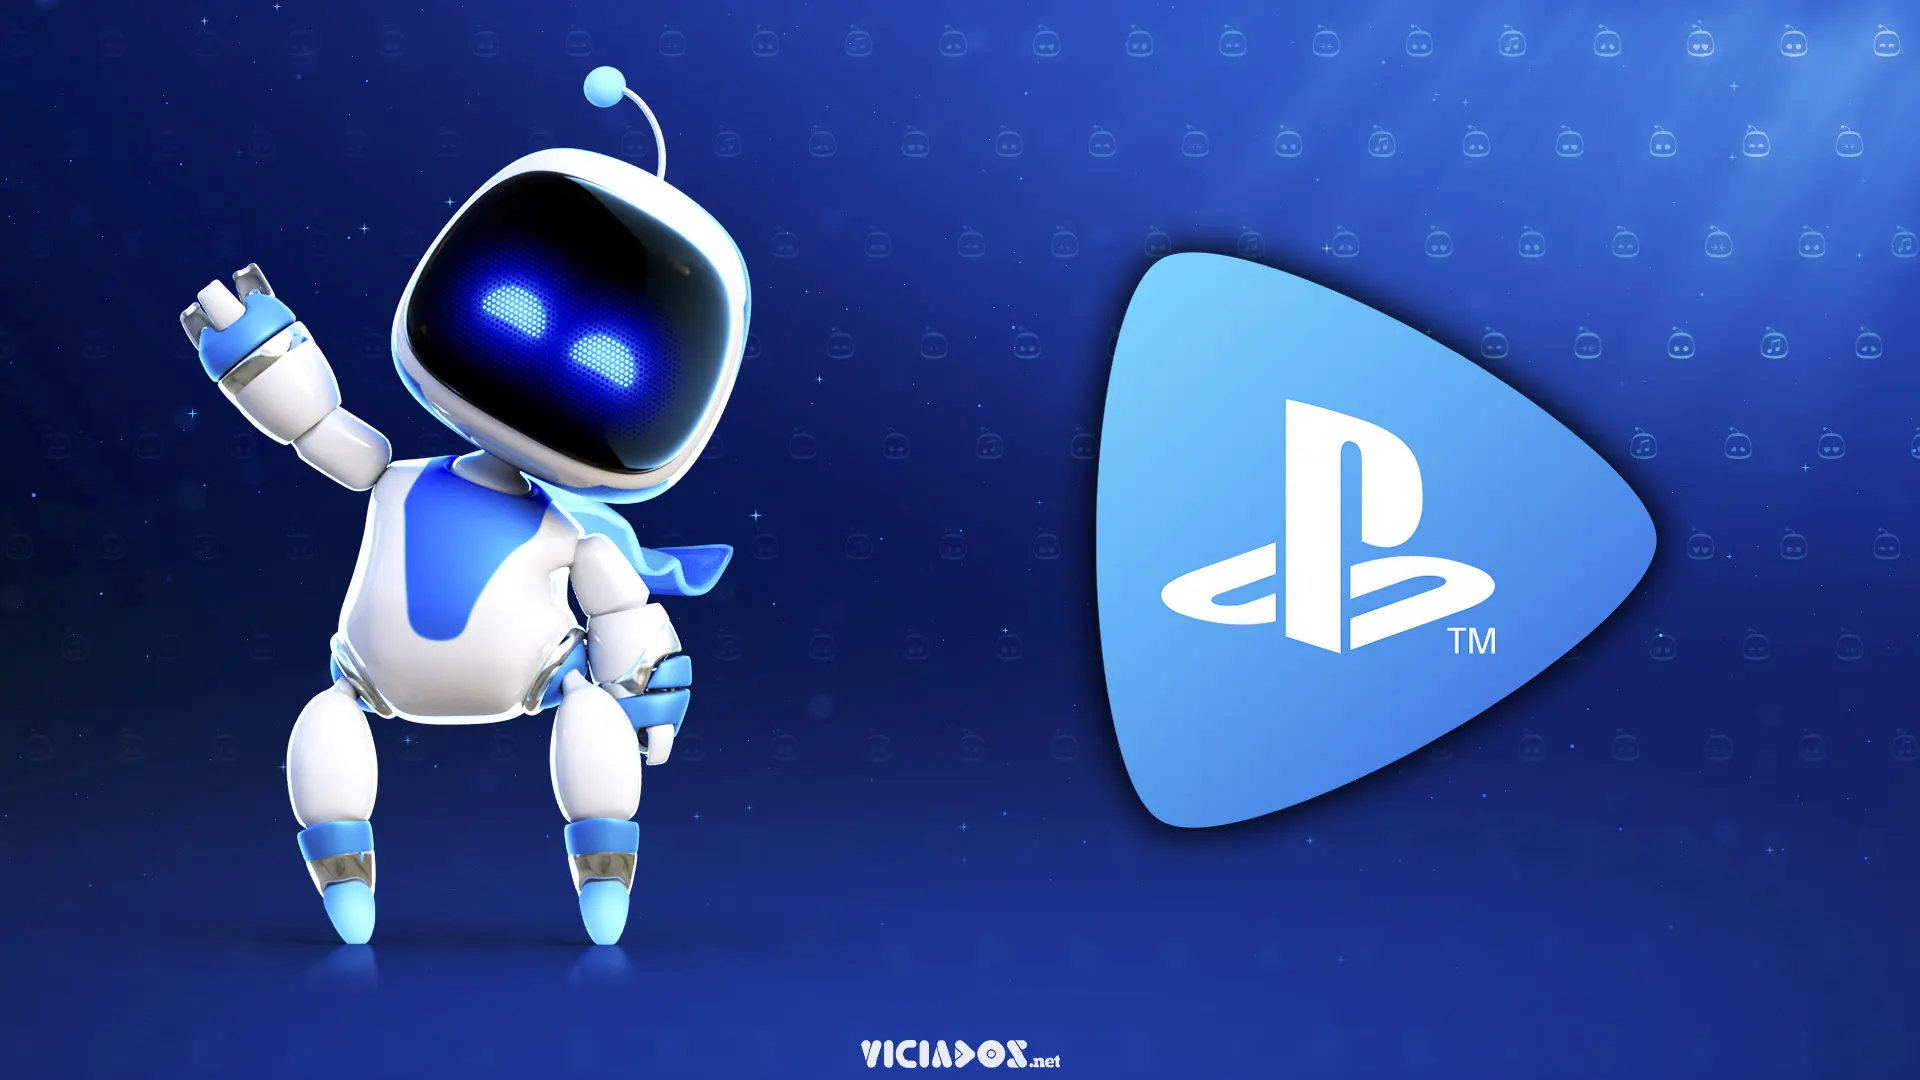 Mais novidades para o PlayStation podem vir nas próximas semanas 2022 Viciados